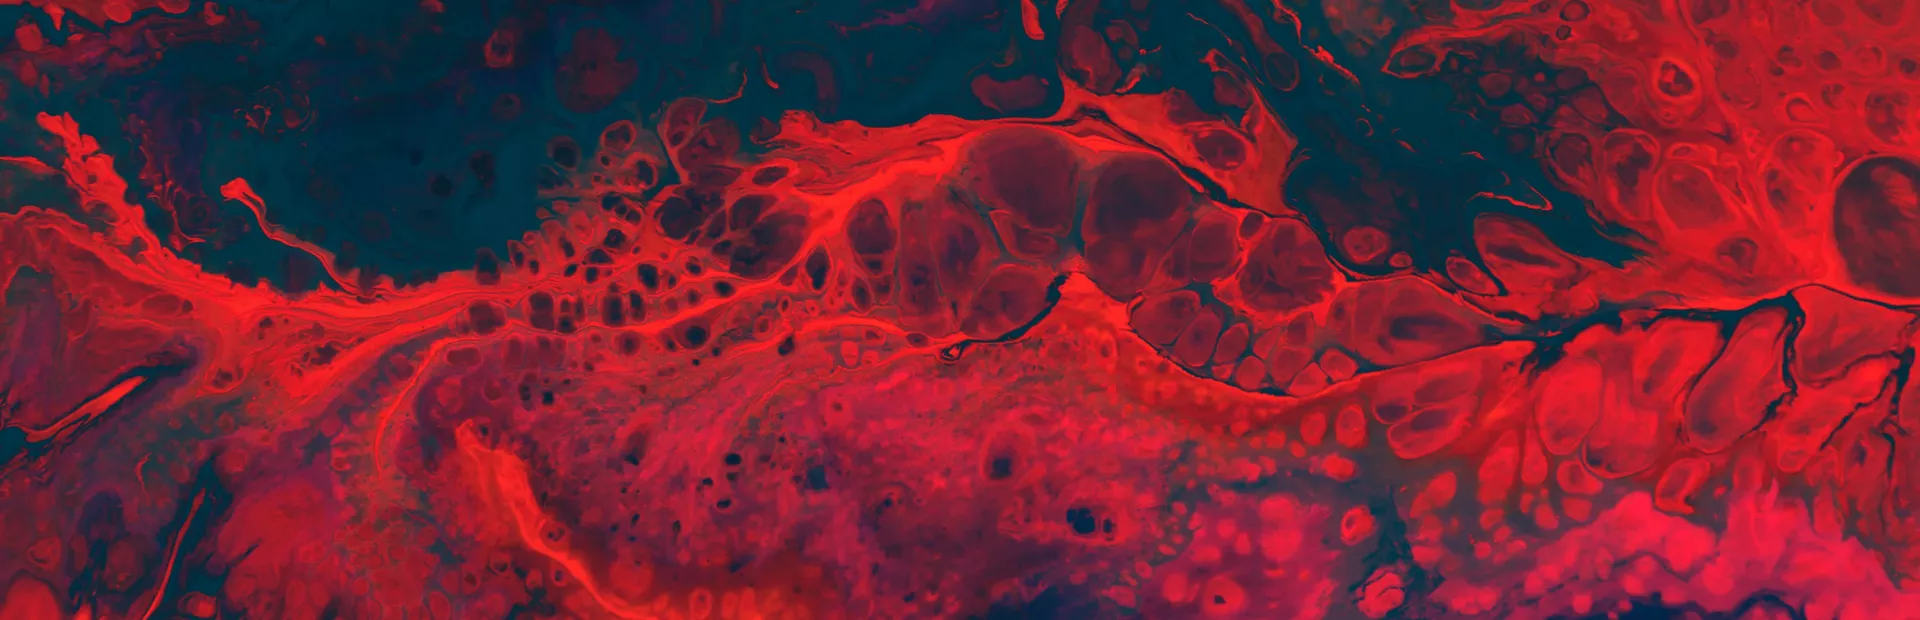 Imagen digital de un tumor neuroendocrino en infrarrojos